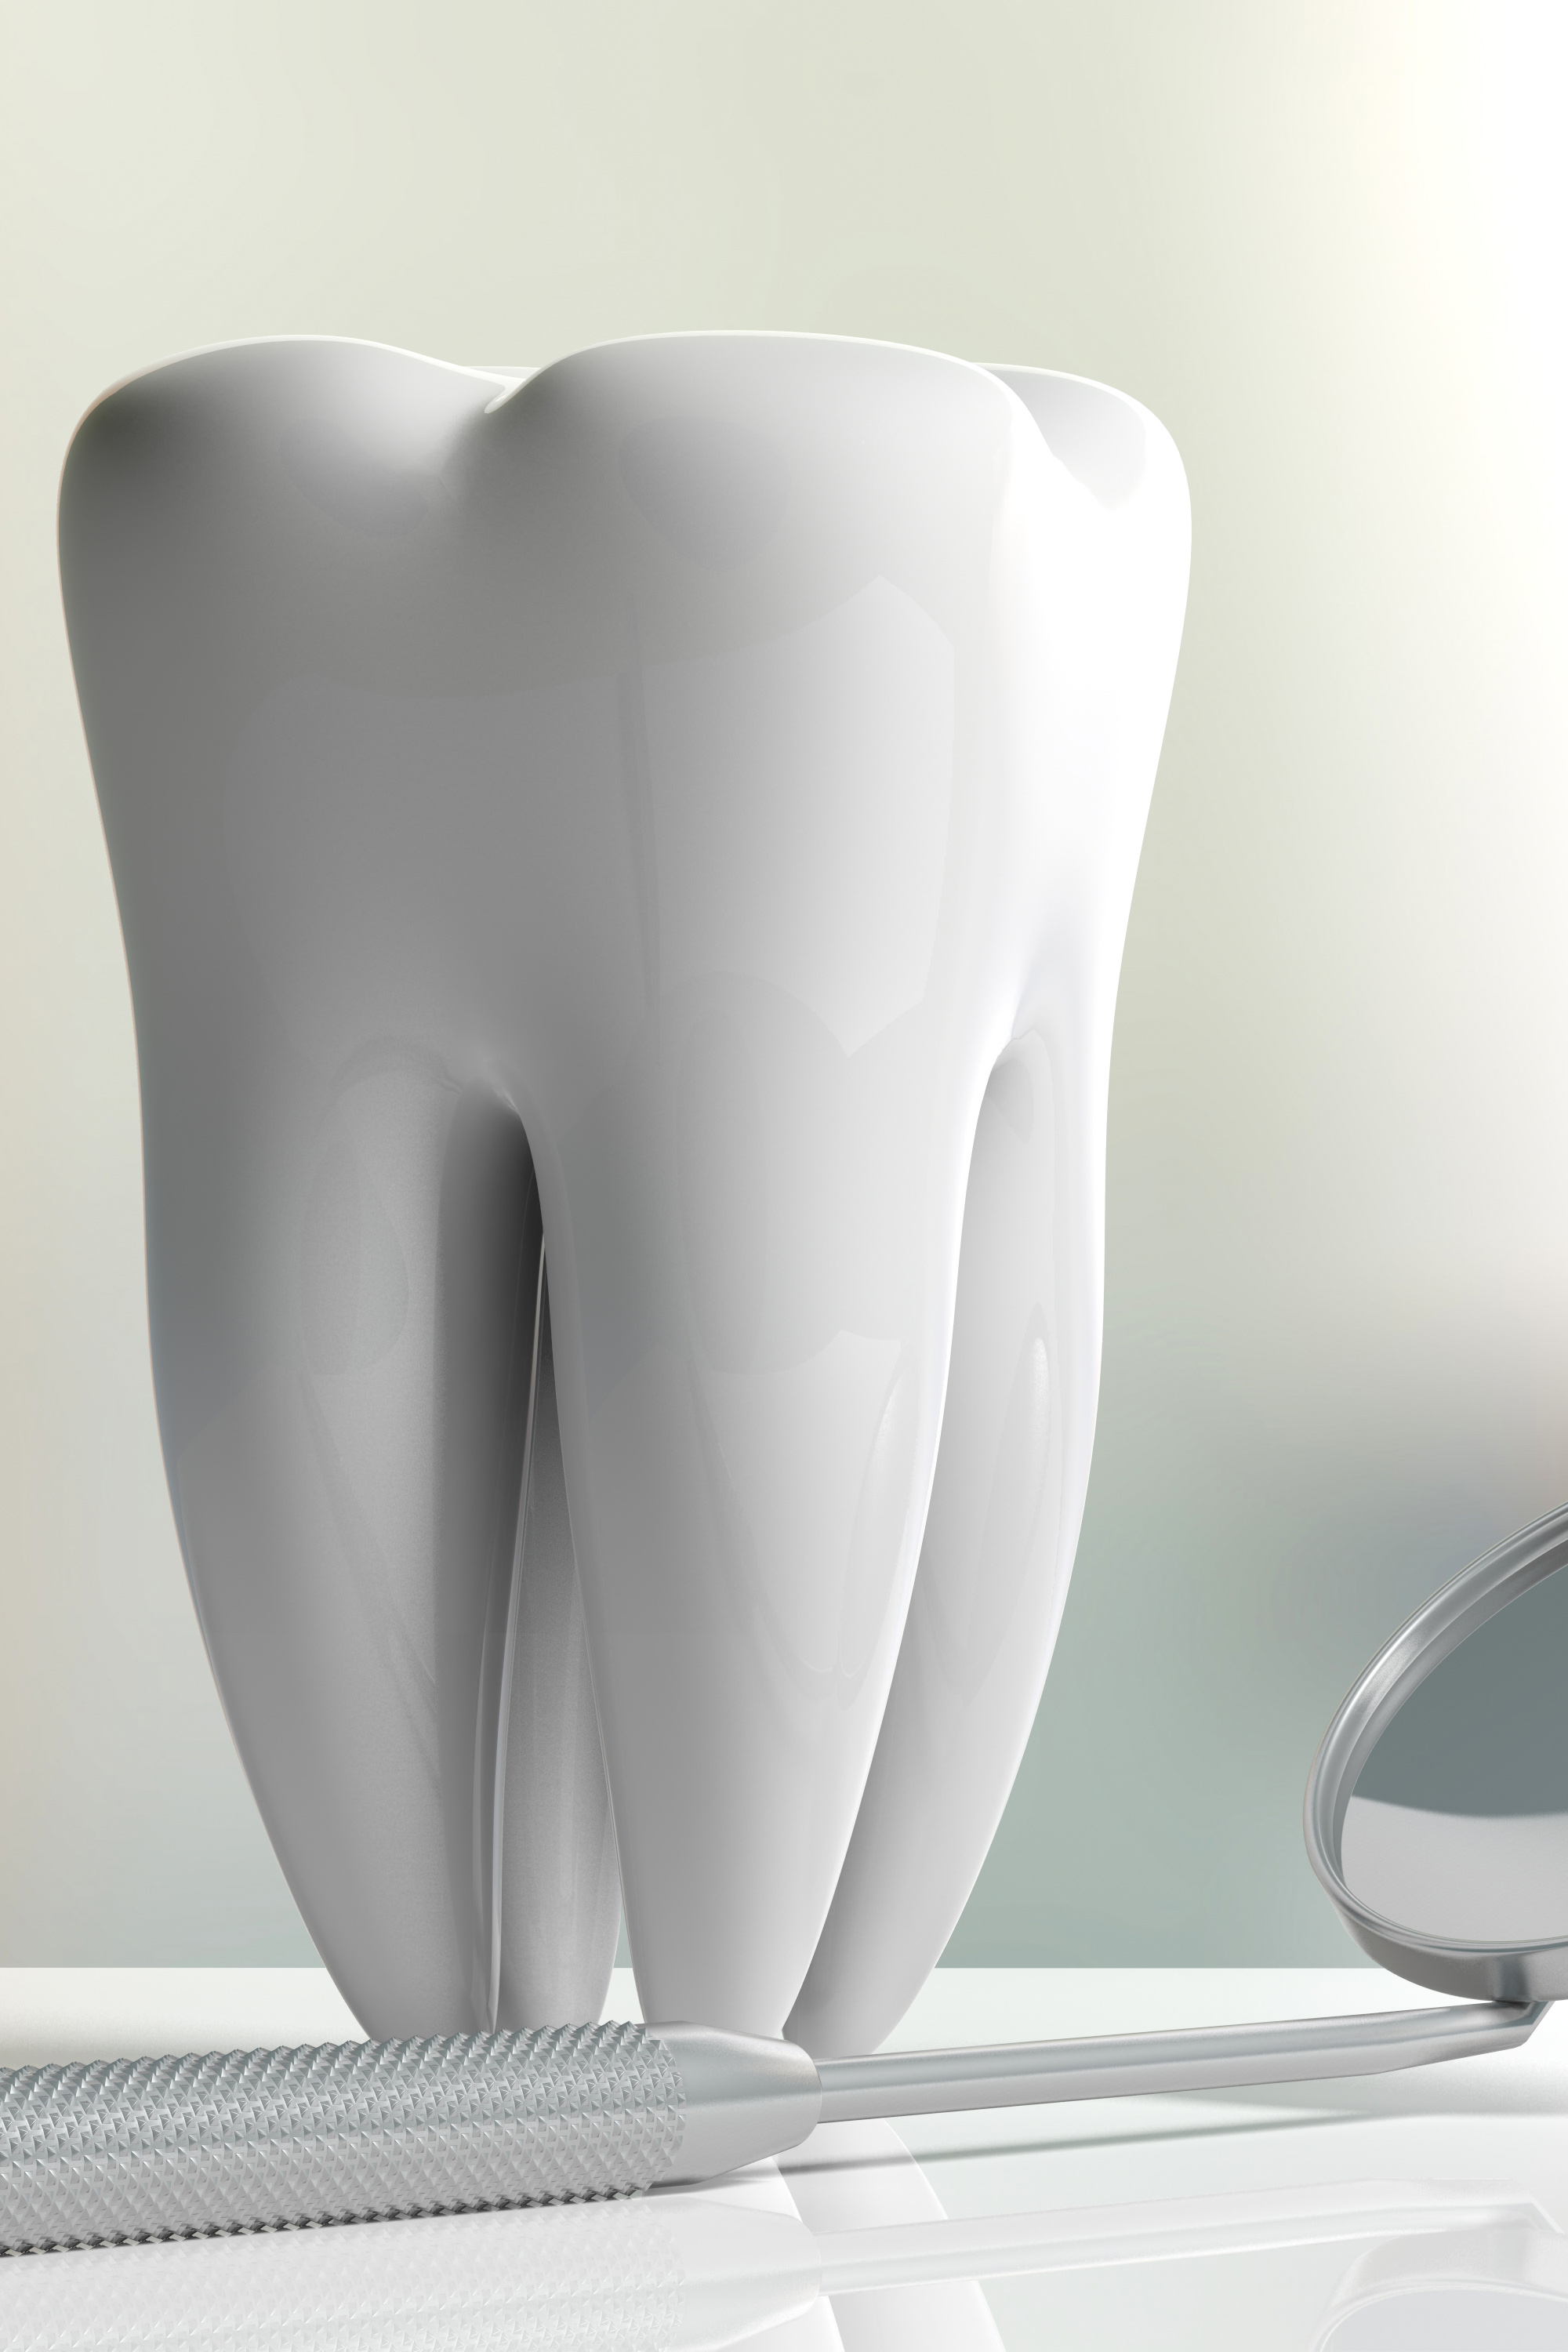 Nytt <br /> applikationsområde <br /> för Bactiguards <br /> teknologi - samarbete <br /> inleds med Dentsply <br /> Sirona inom <br /> dentalområdet.